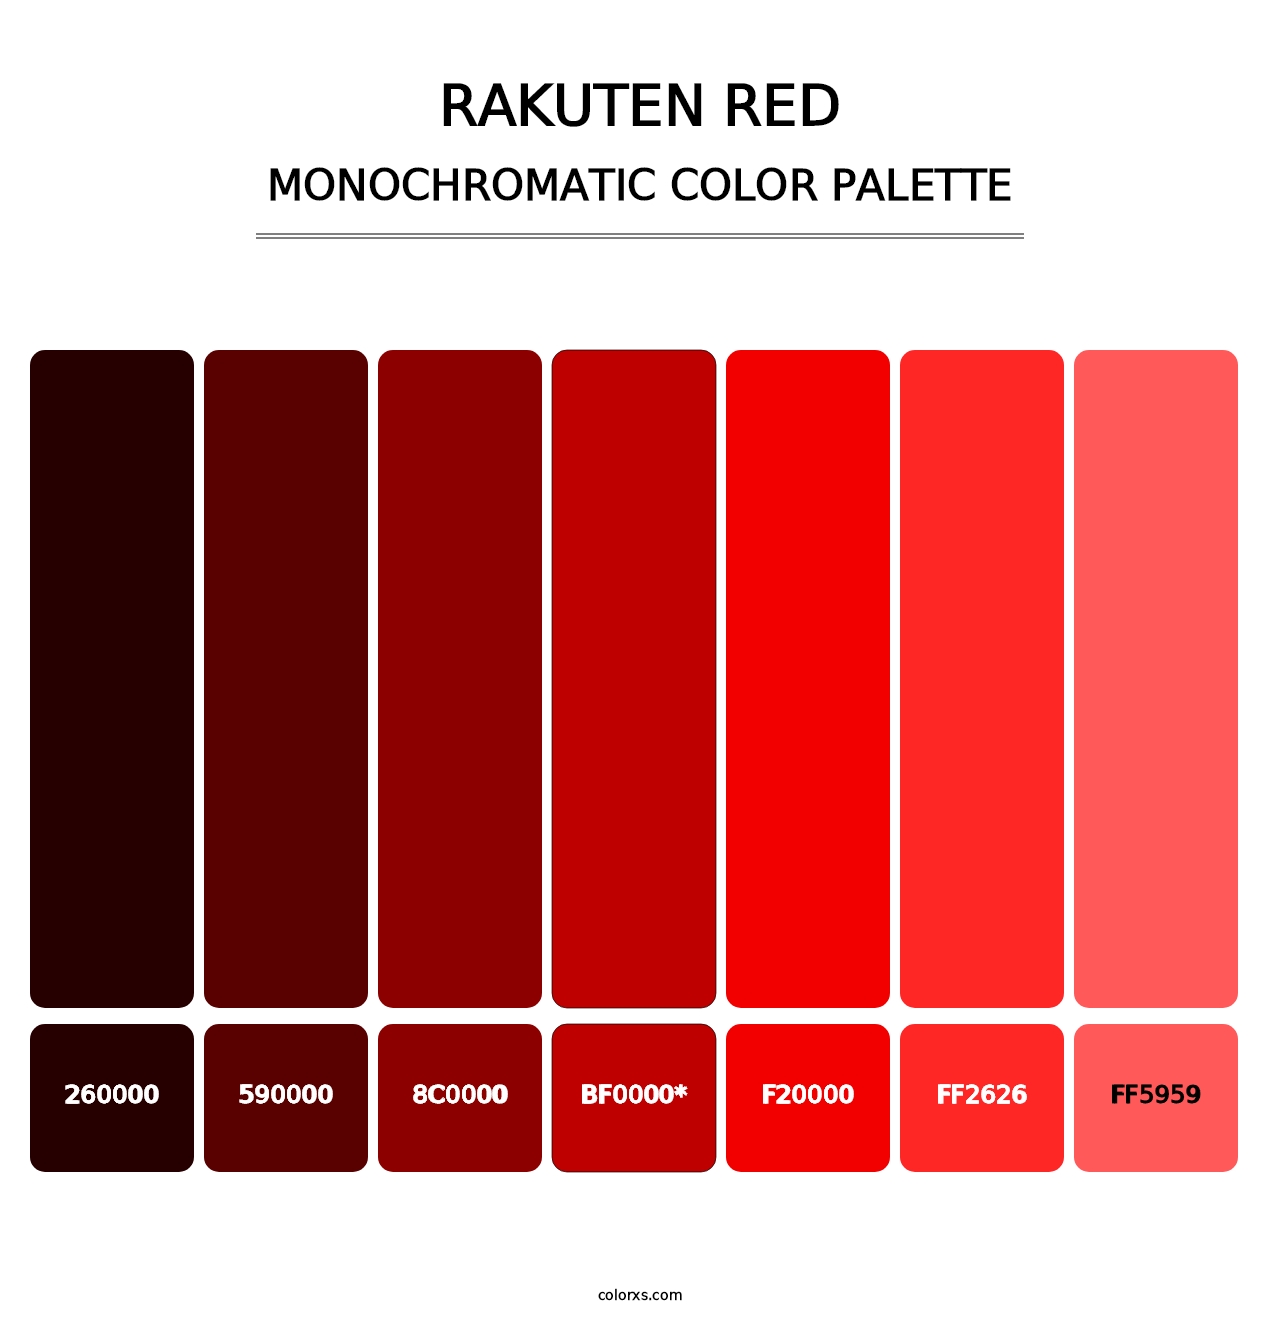 Rakuten Red - Monochromatic Color Palette